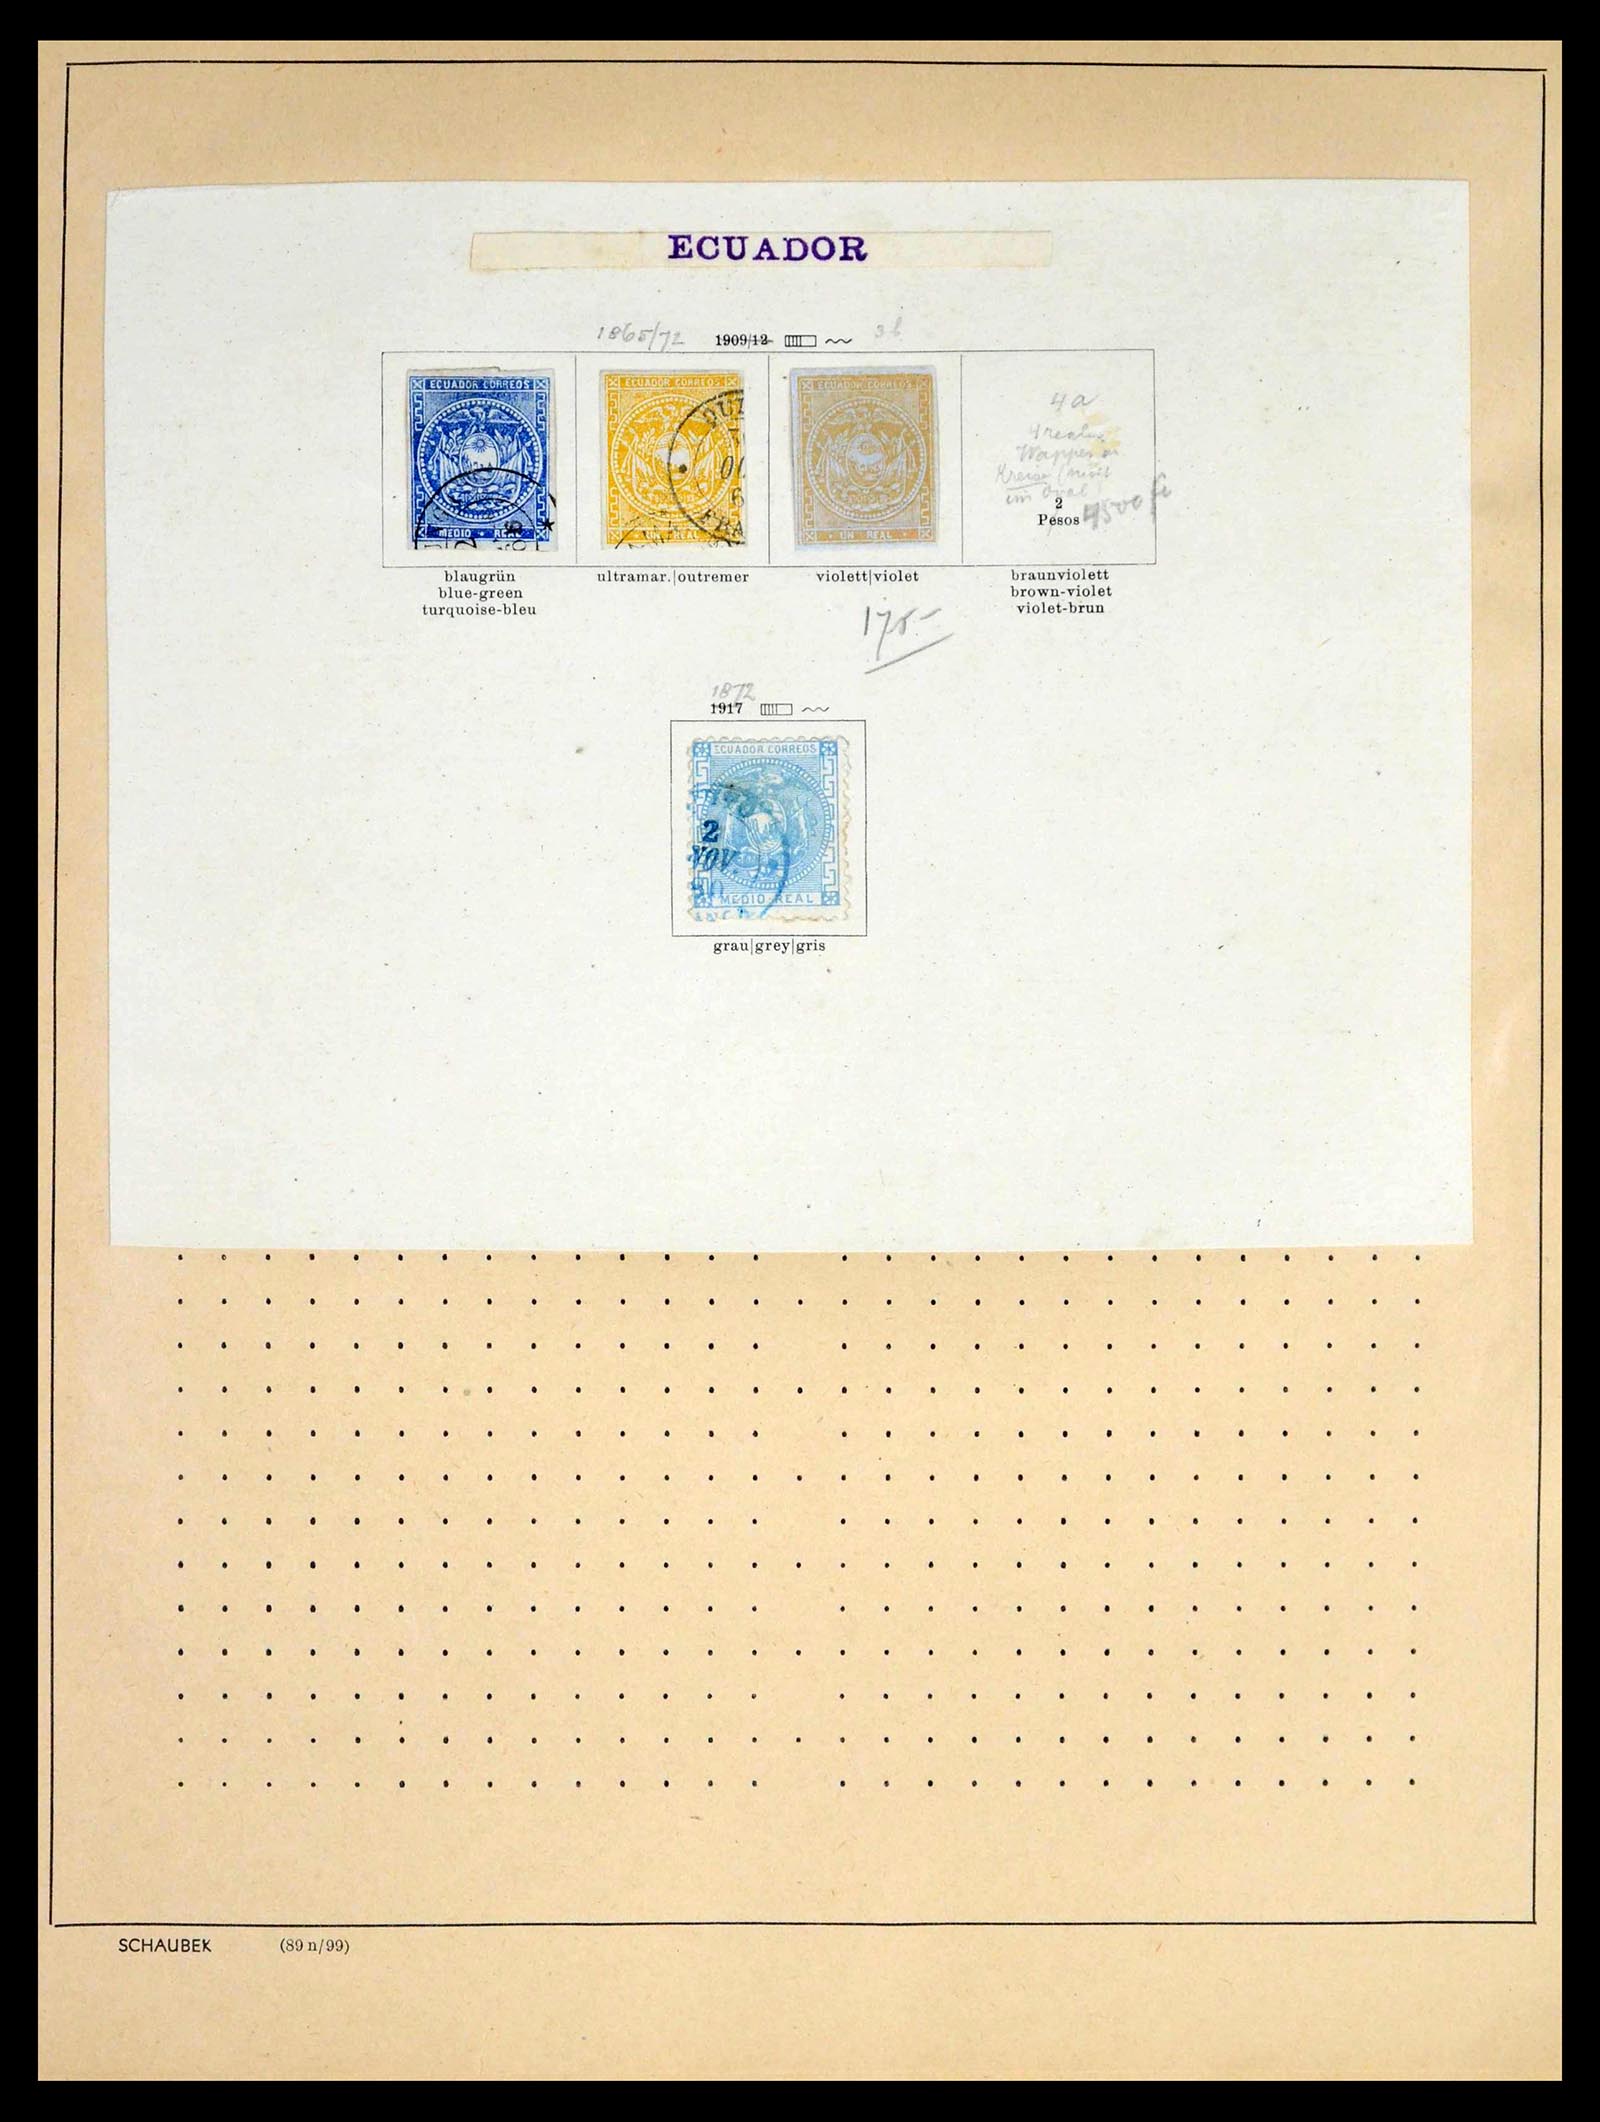 39456 0028 - Stamp collection 39456 Ecuador 1865-1960.